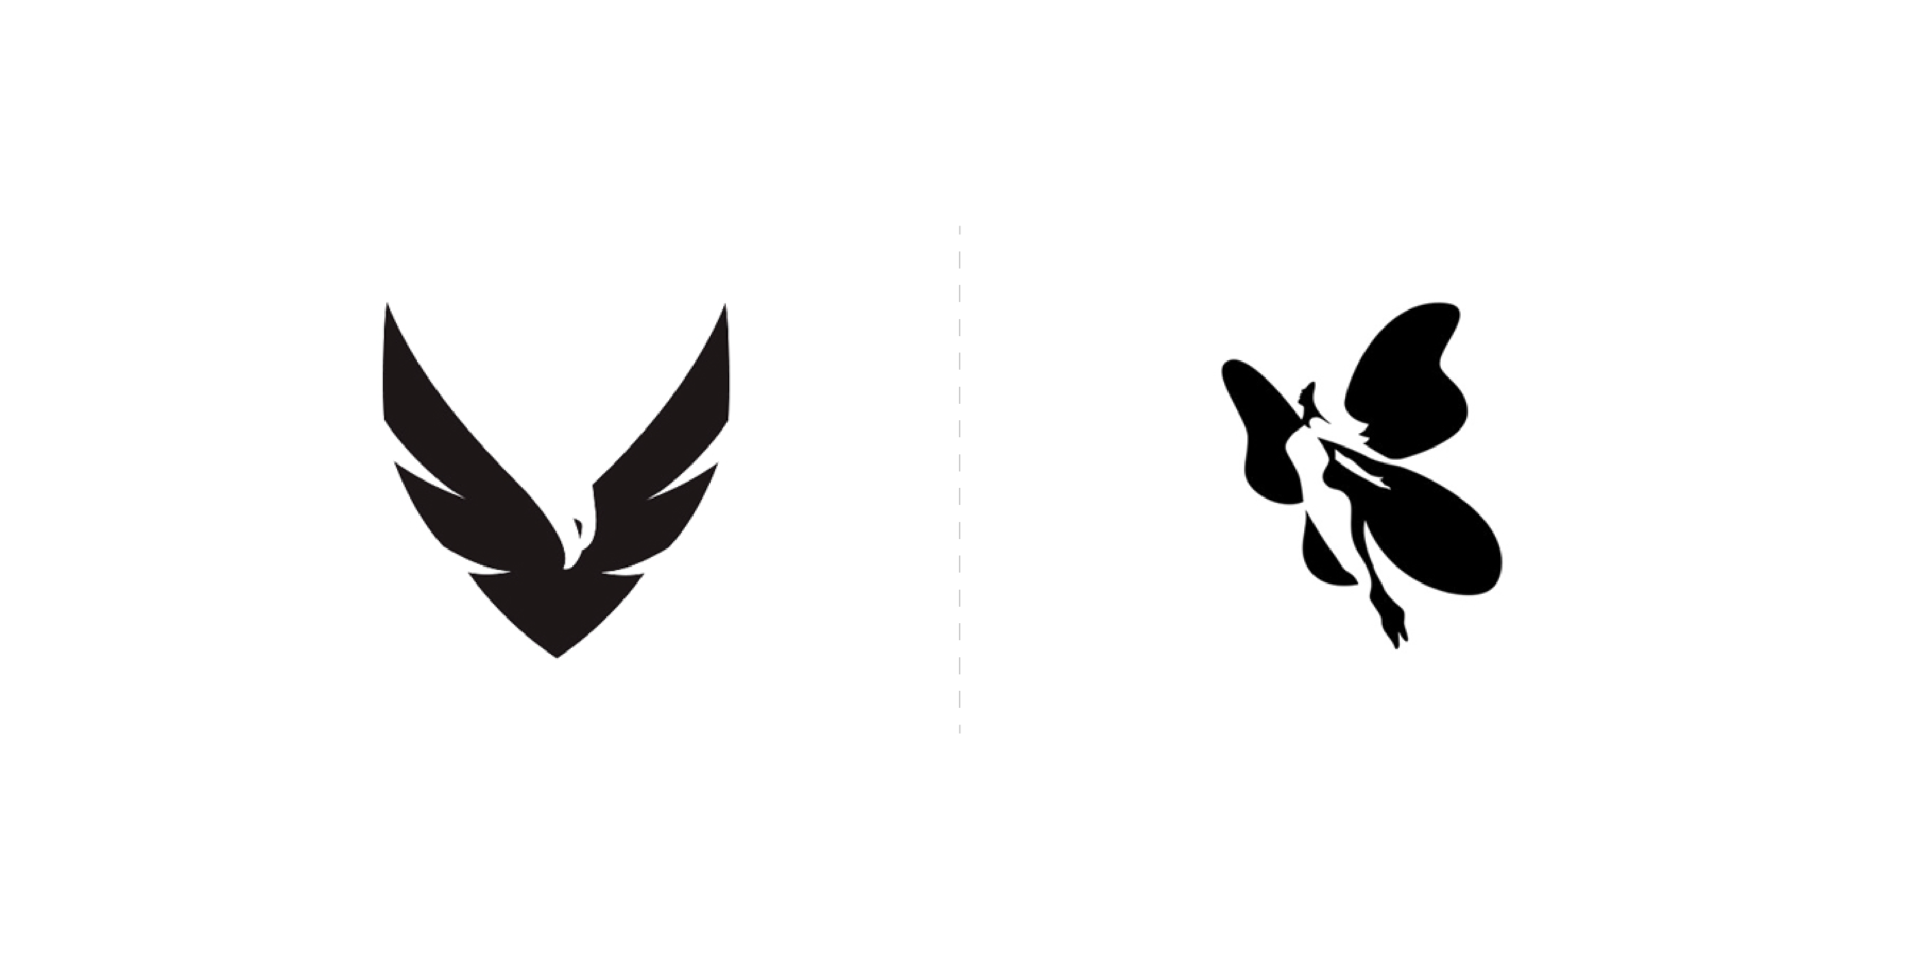 Hermoso diseños minimalistas de logotipo creados con espacios negativos